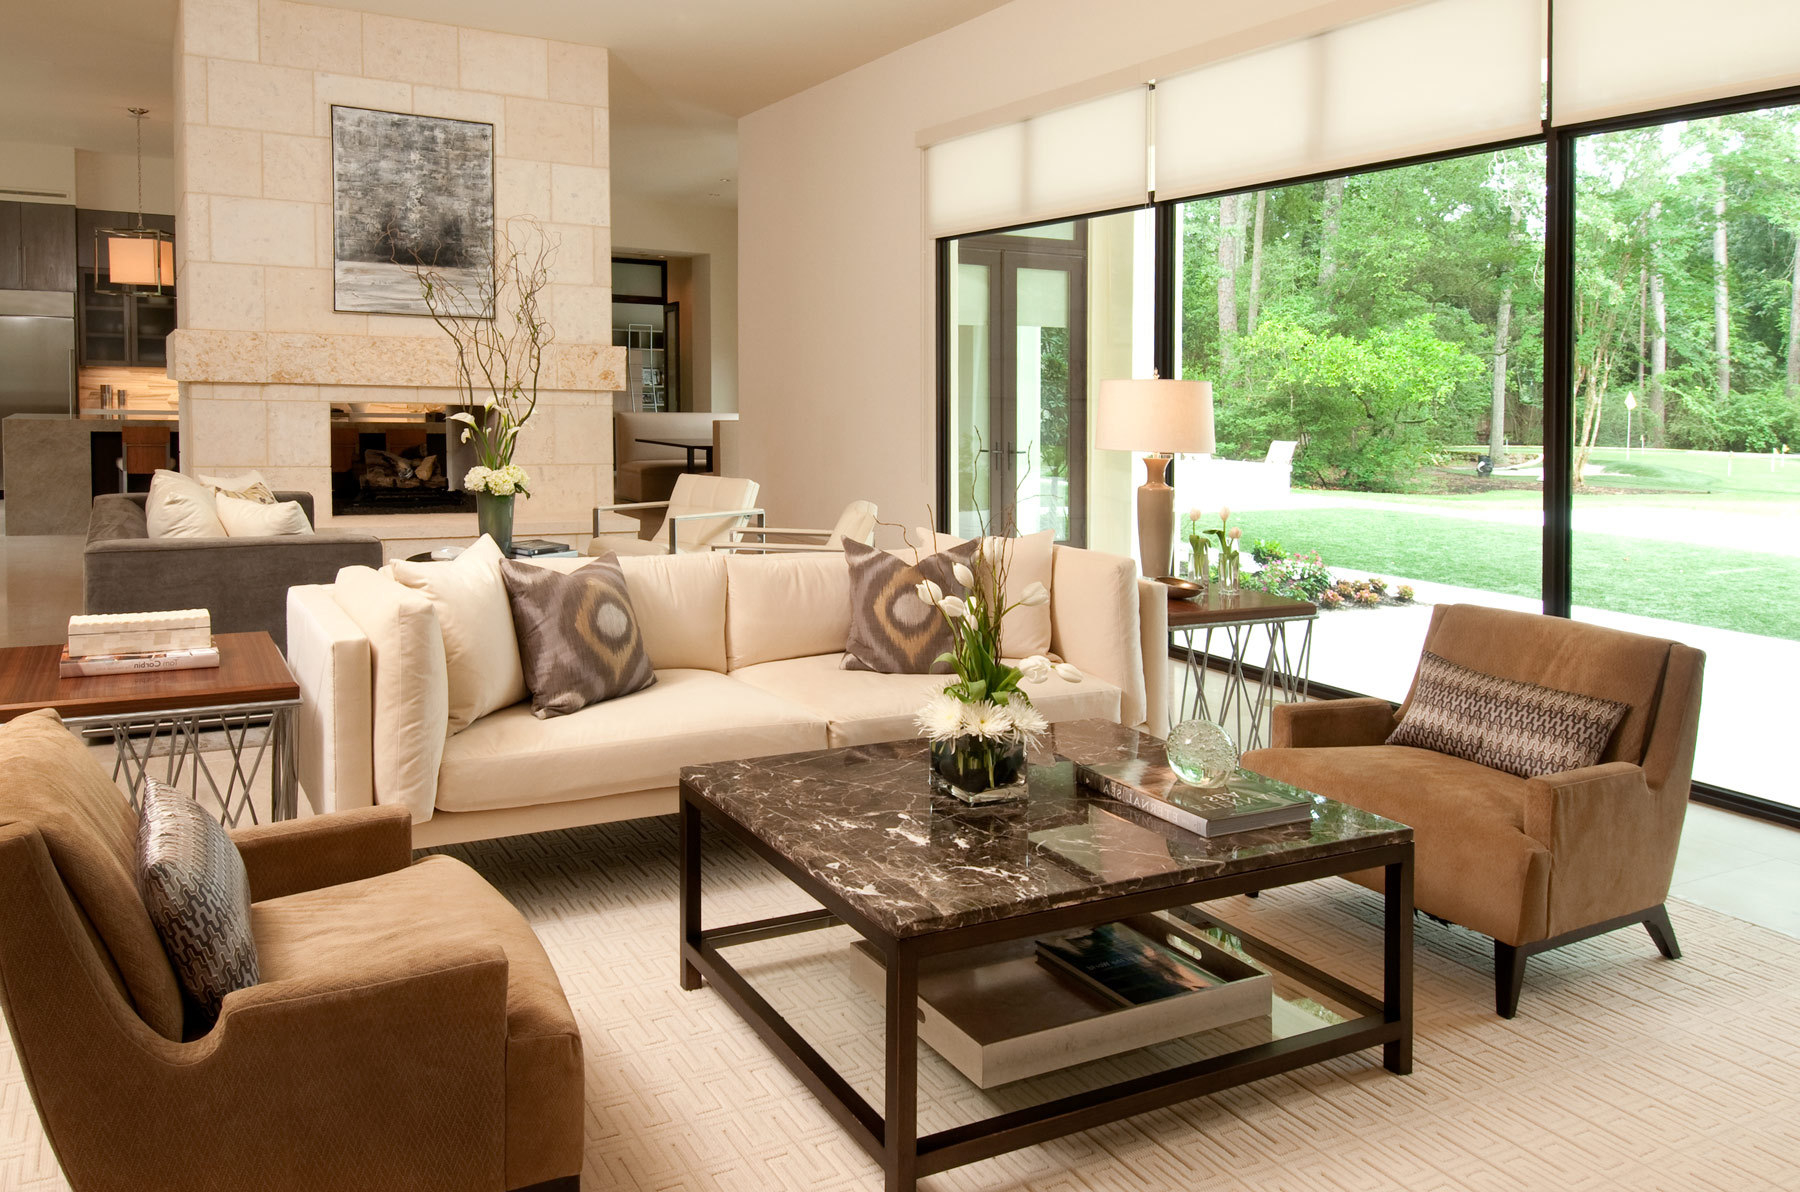 interior decor ideas for living room